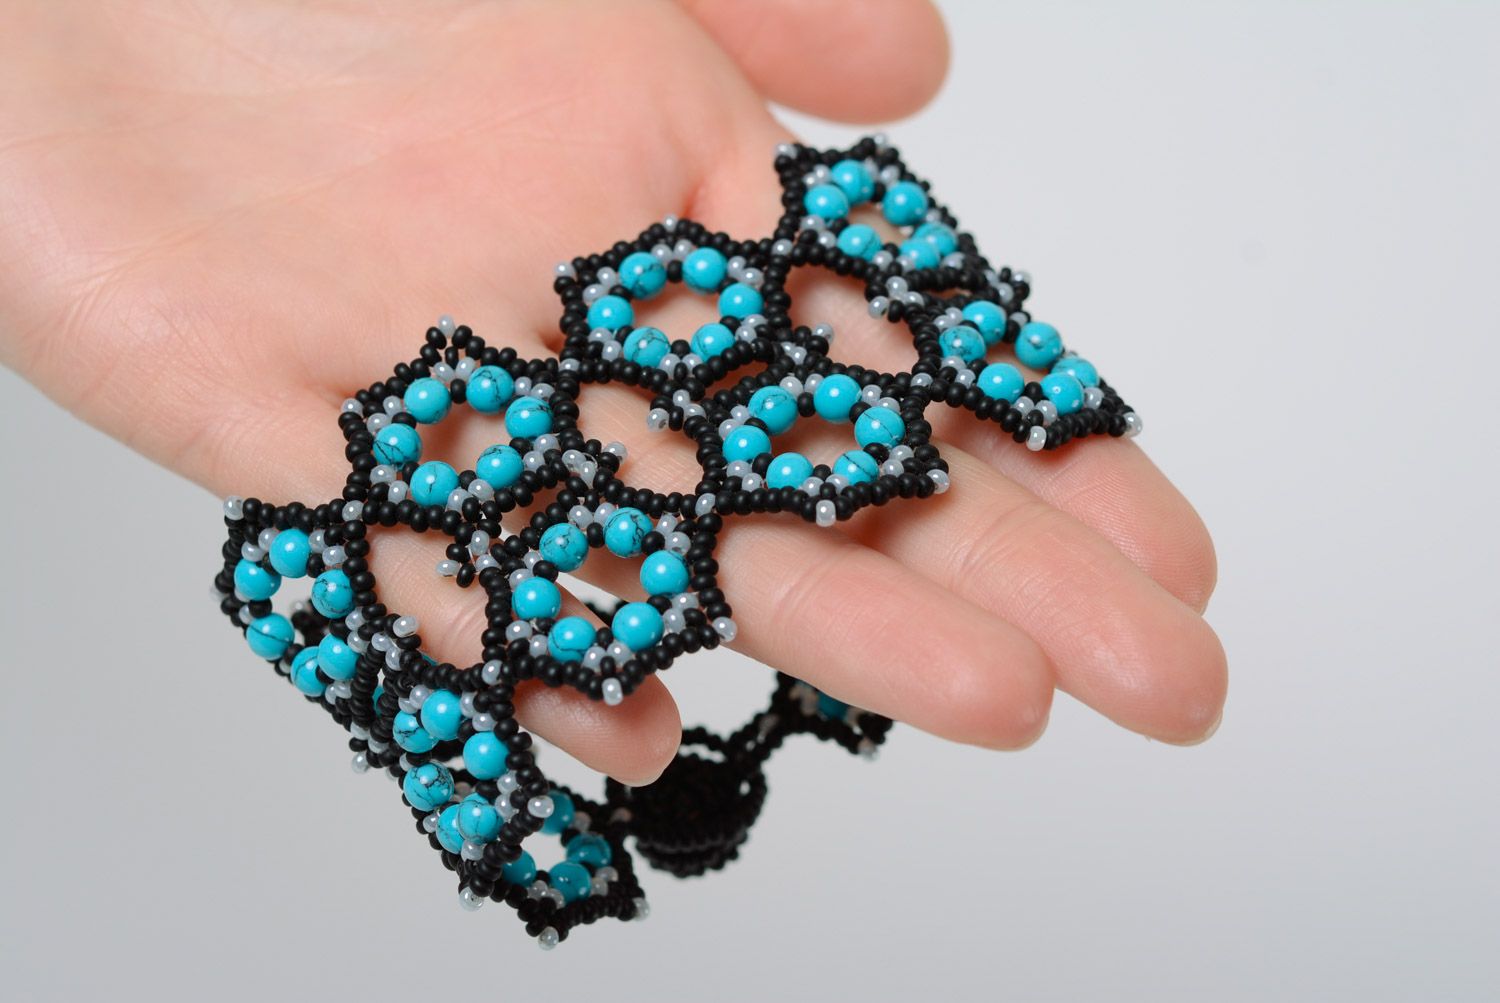 Black and blue handmade designer wrist bracelet woven of beads for women photo 2